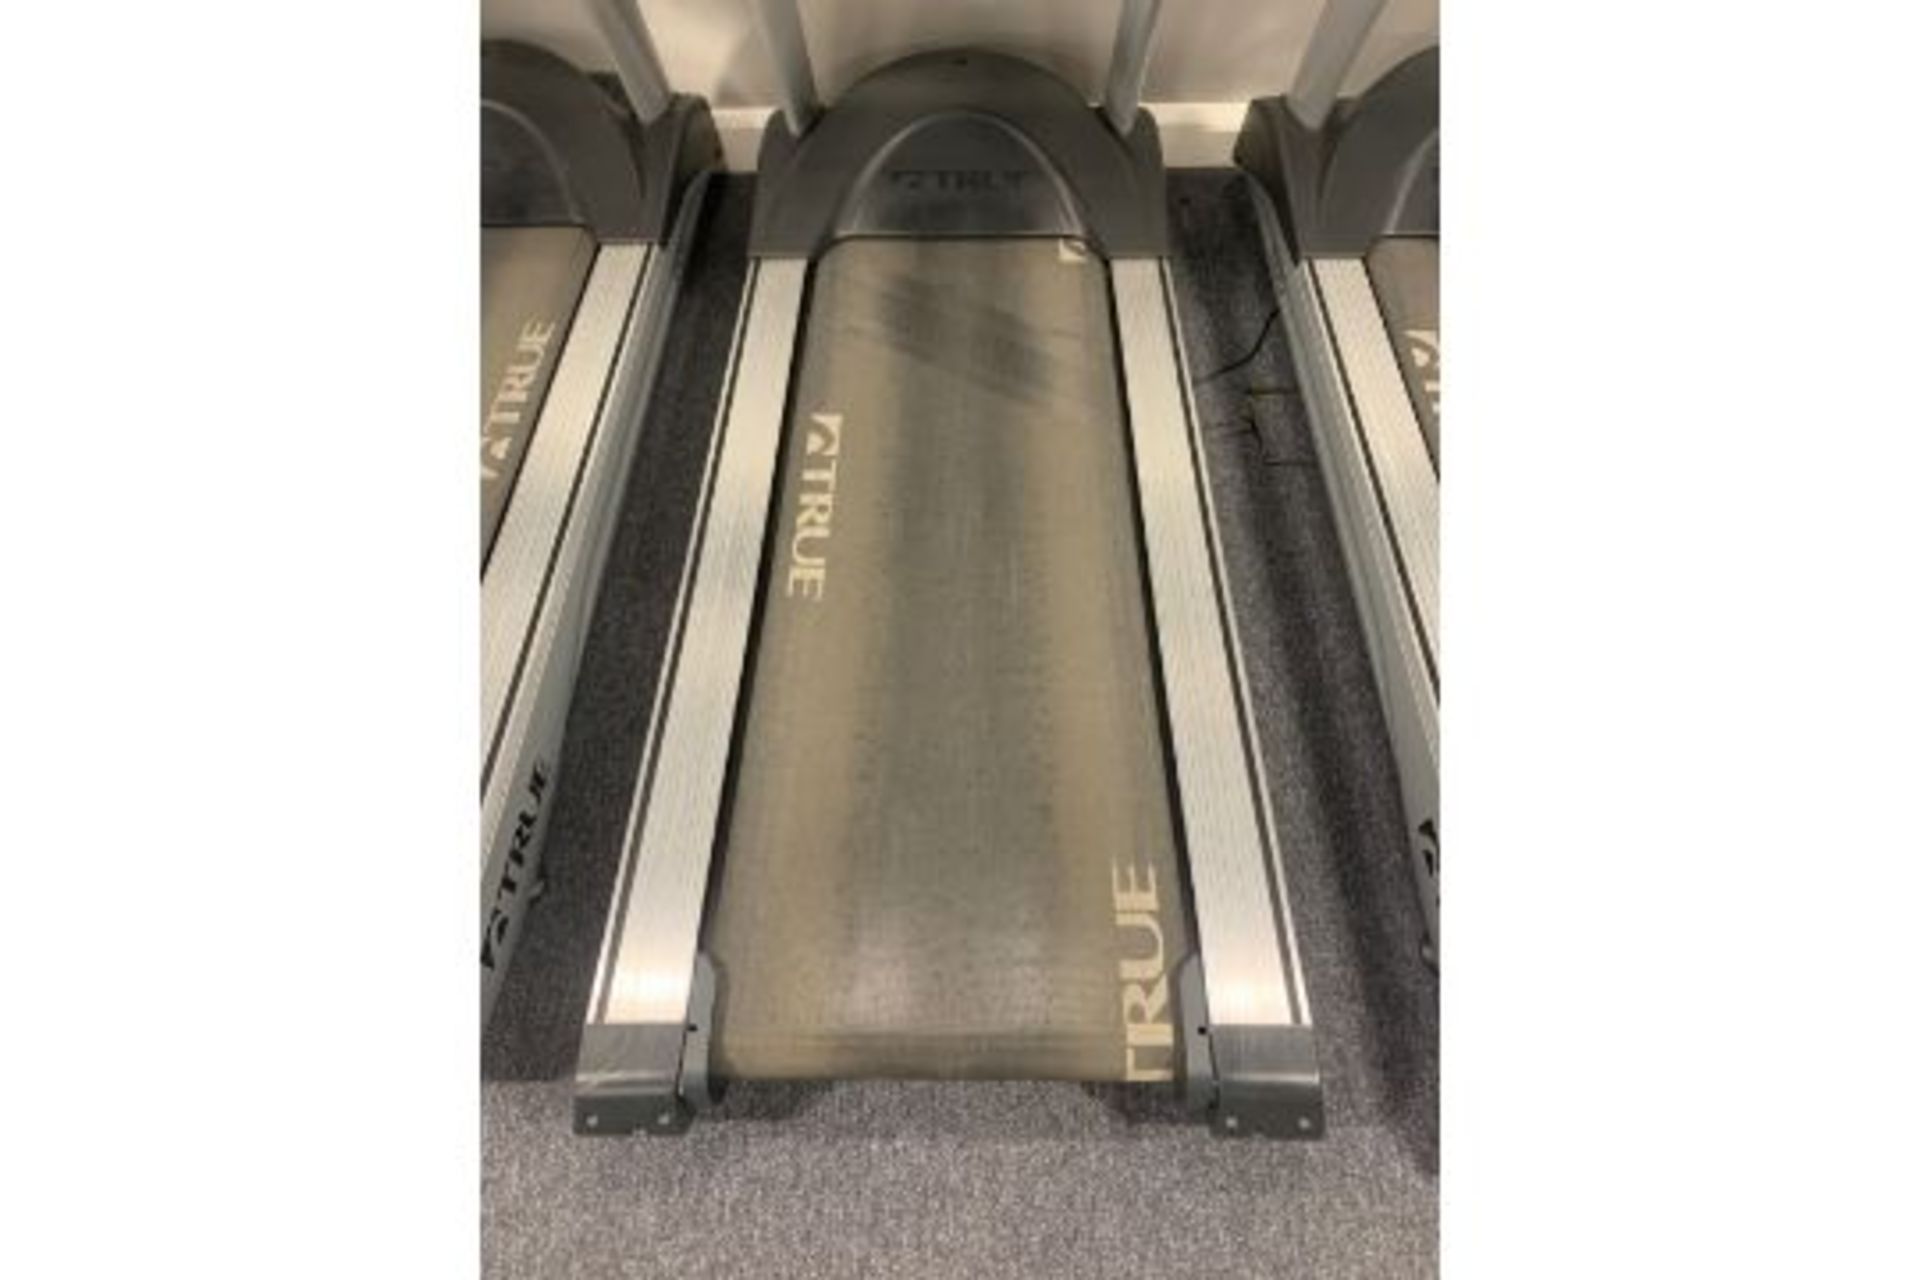 True Fitness 650 Treadmill - Image 3 of 3